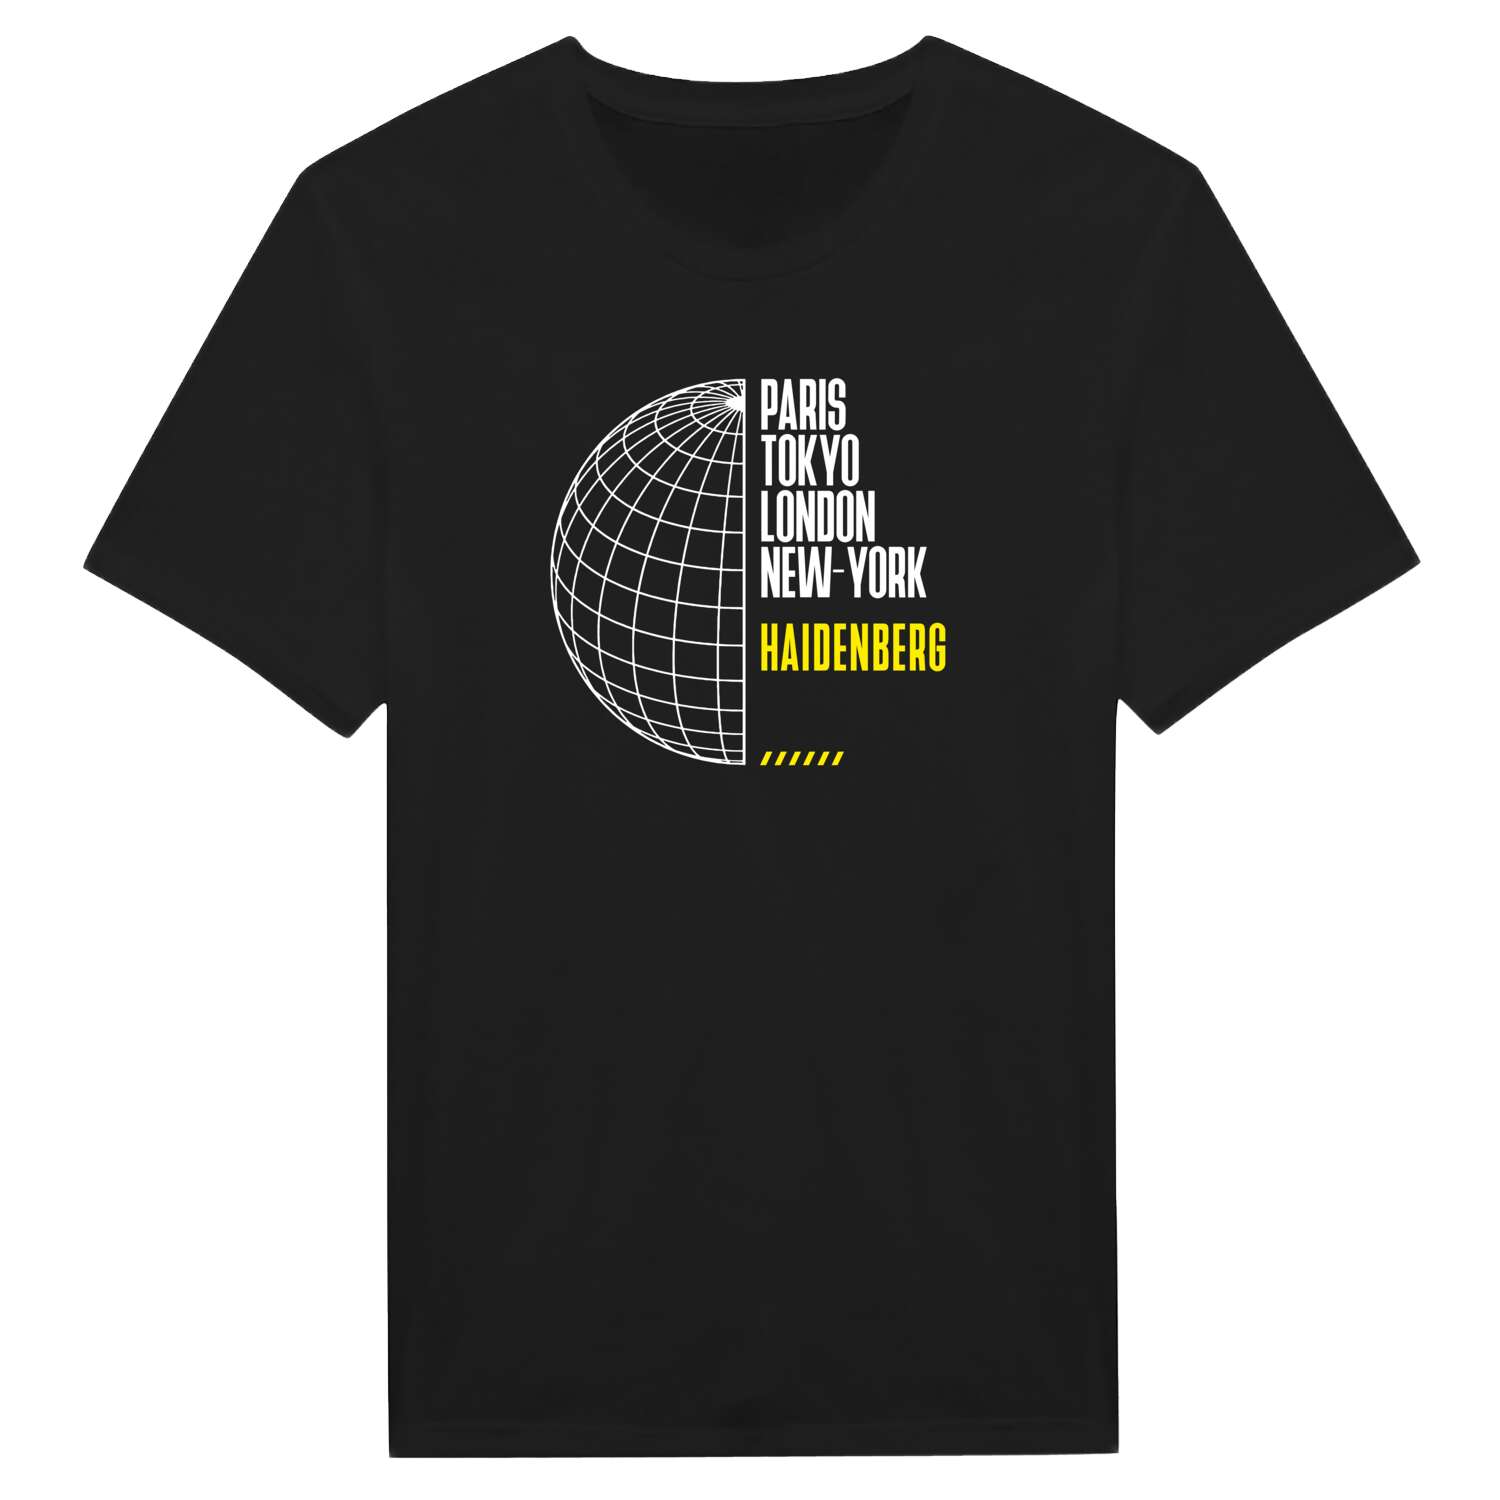 Haidenberg T-Shirt »Paris Tokyo London«